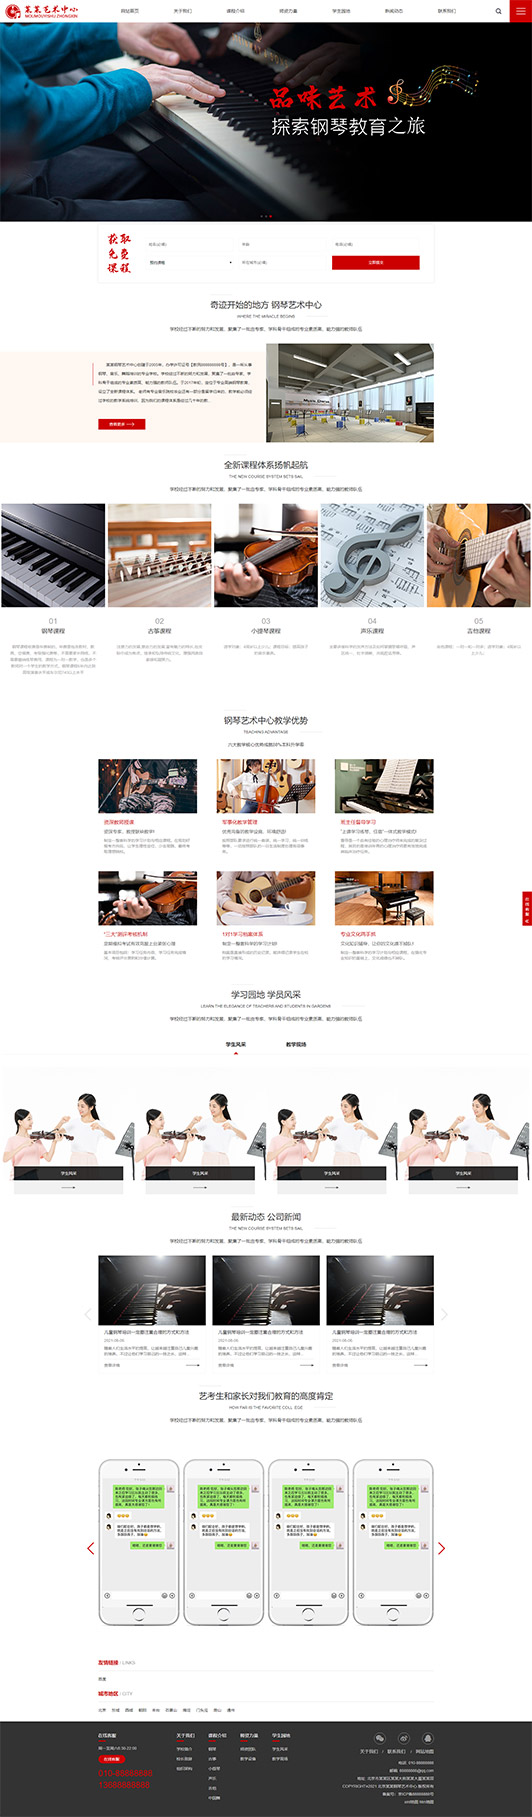 淄博钢琴艺术培训公司响应式企业网站